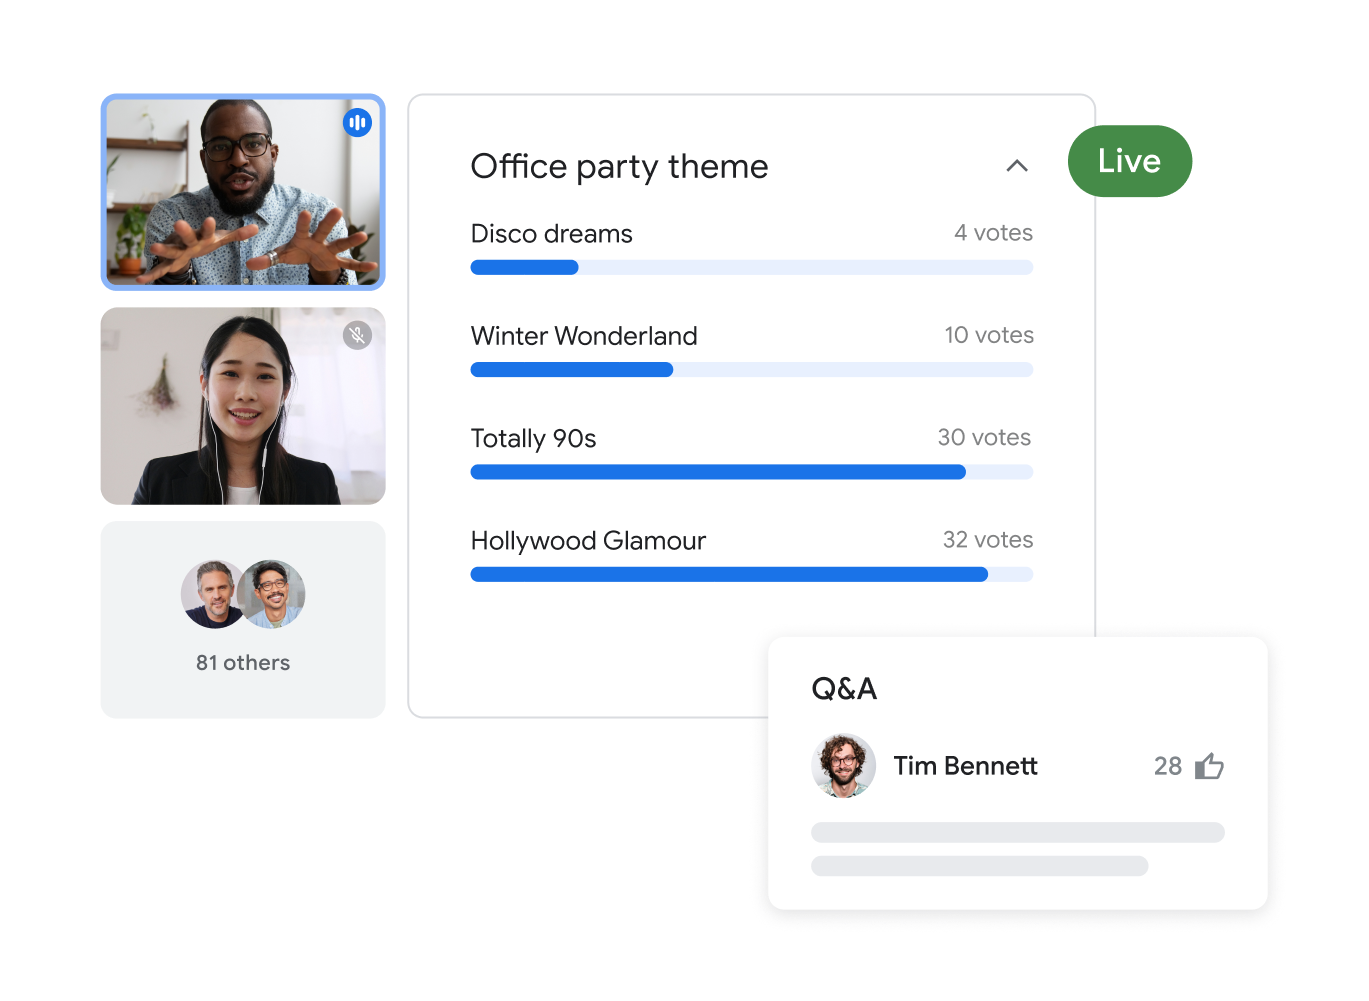 การโทรผ่าน Google Meet ที่มีผู้เข้าร่วม 83 คนซึ่งแสดงภาพผู้ใช้ที่ไฮไลต์ 2 คนกำลังสร้างแบบสำรวจสำหรับธีมปาร์ตี้ของออฟฟิศพร้อมกับตัวเลือกคำตอบ